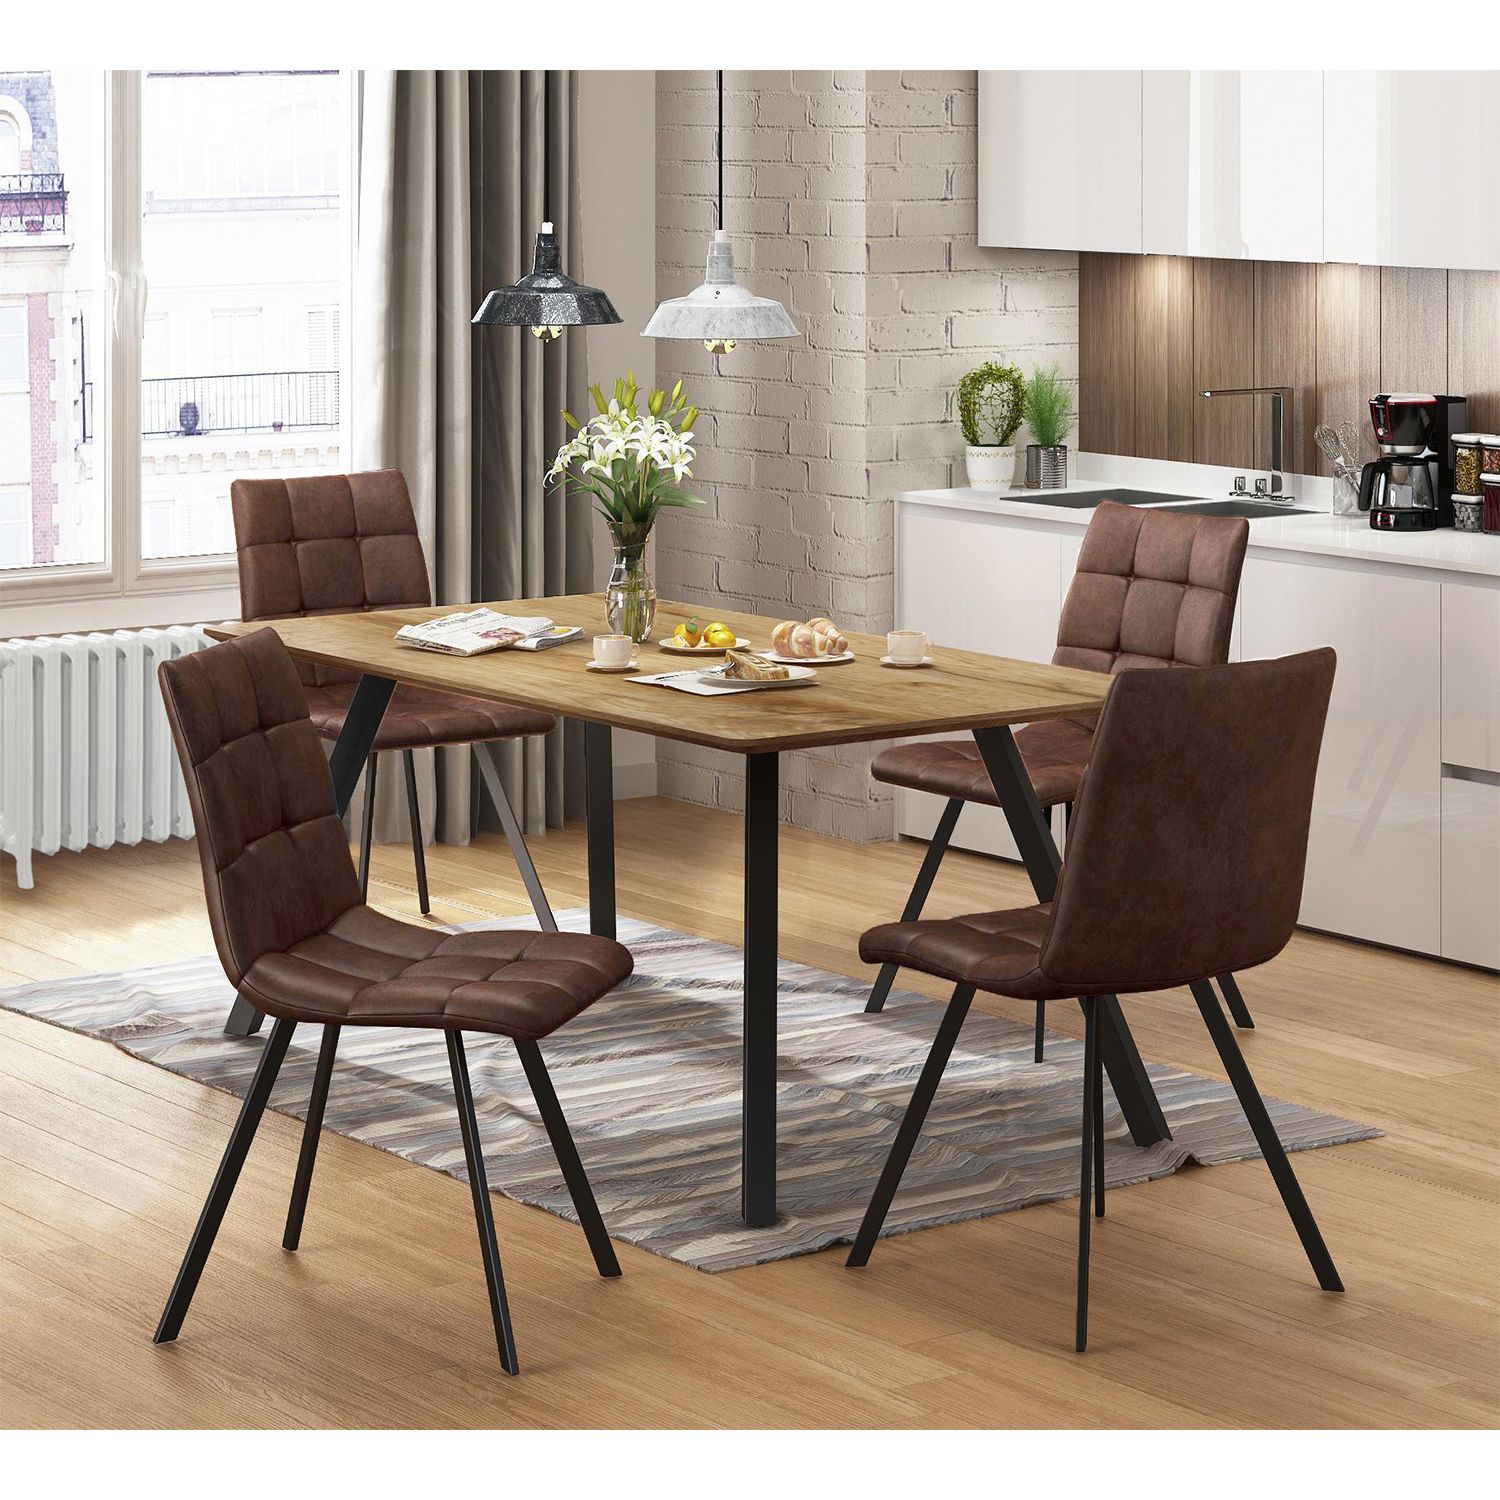 Jídelní stůl BERGEN dub + 4 židle BERGEN hnědé mikrovlákno - IDEA nábytek